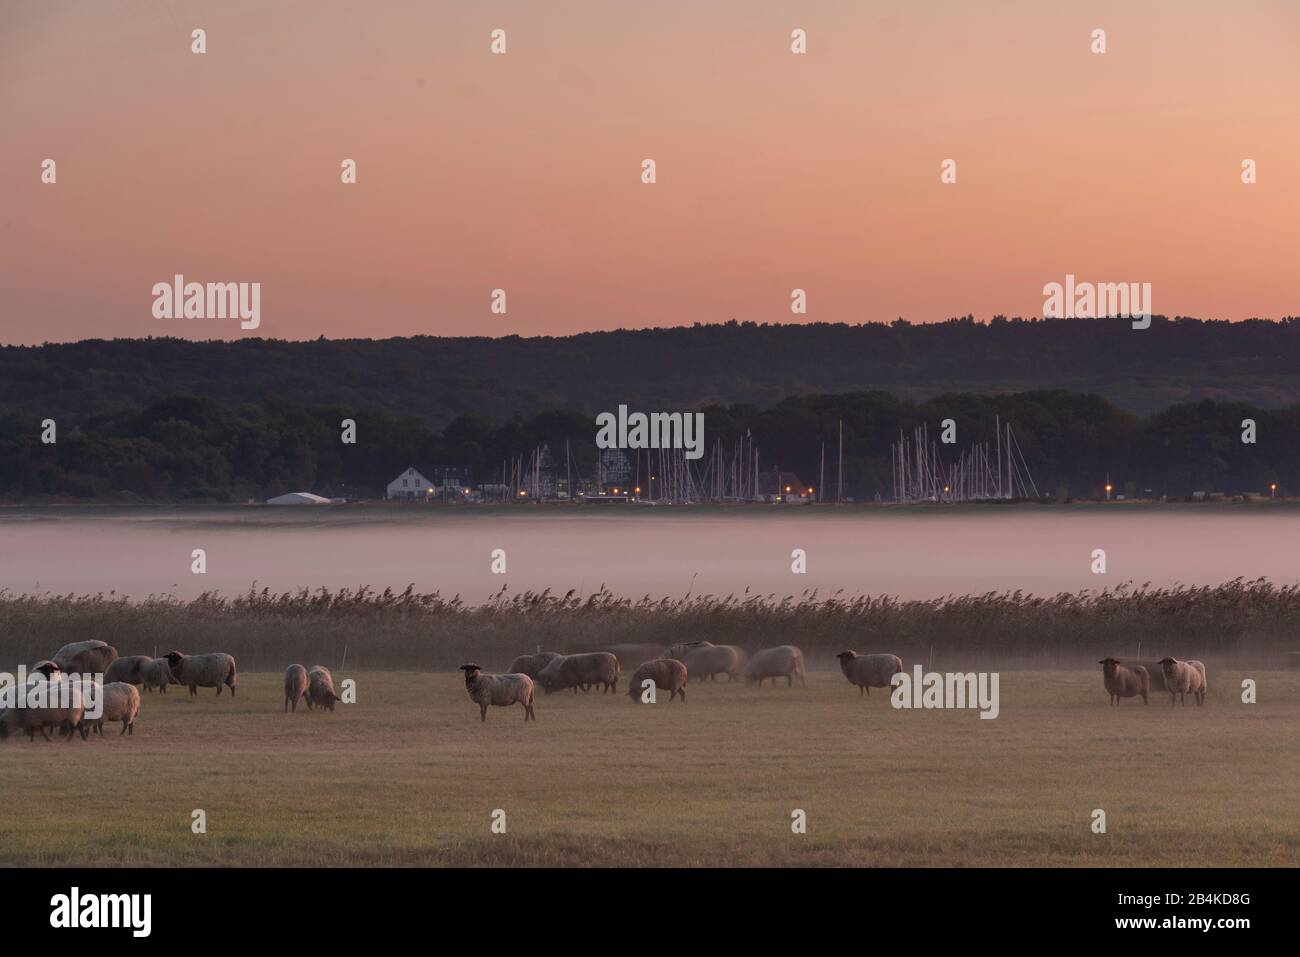 Alemania, Mecklemburgo-Pomerania Occidental, Hiddensee, vista de un prado con ovejas, velo de niebla, monasterio del puerto, veleros. Foto de stock